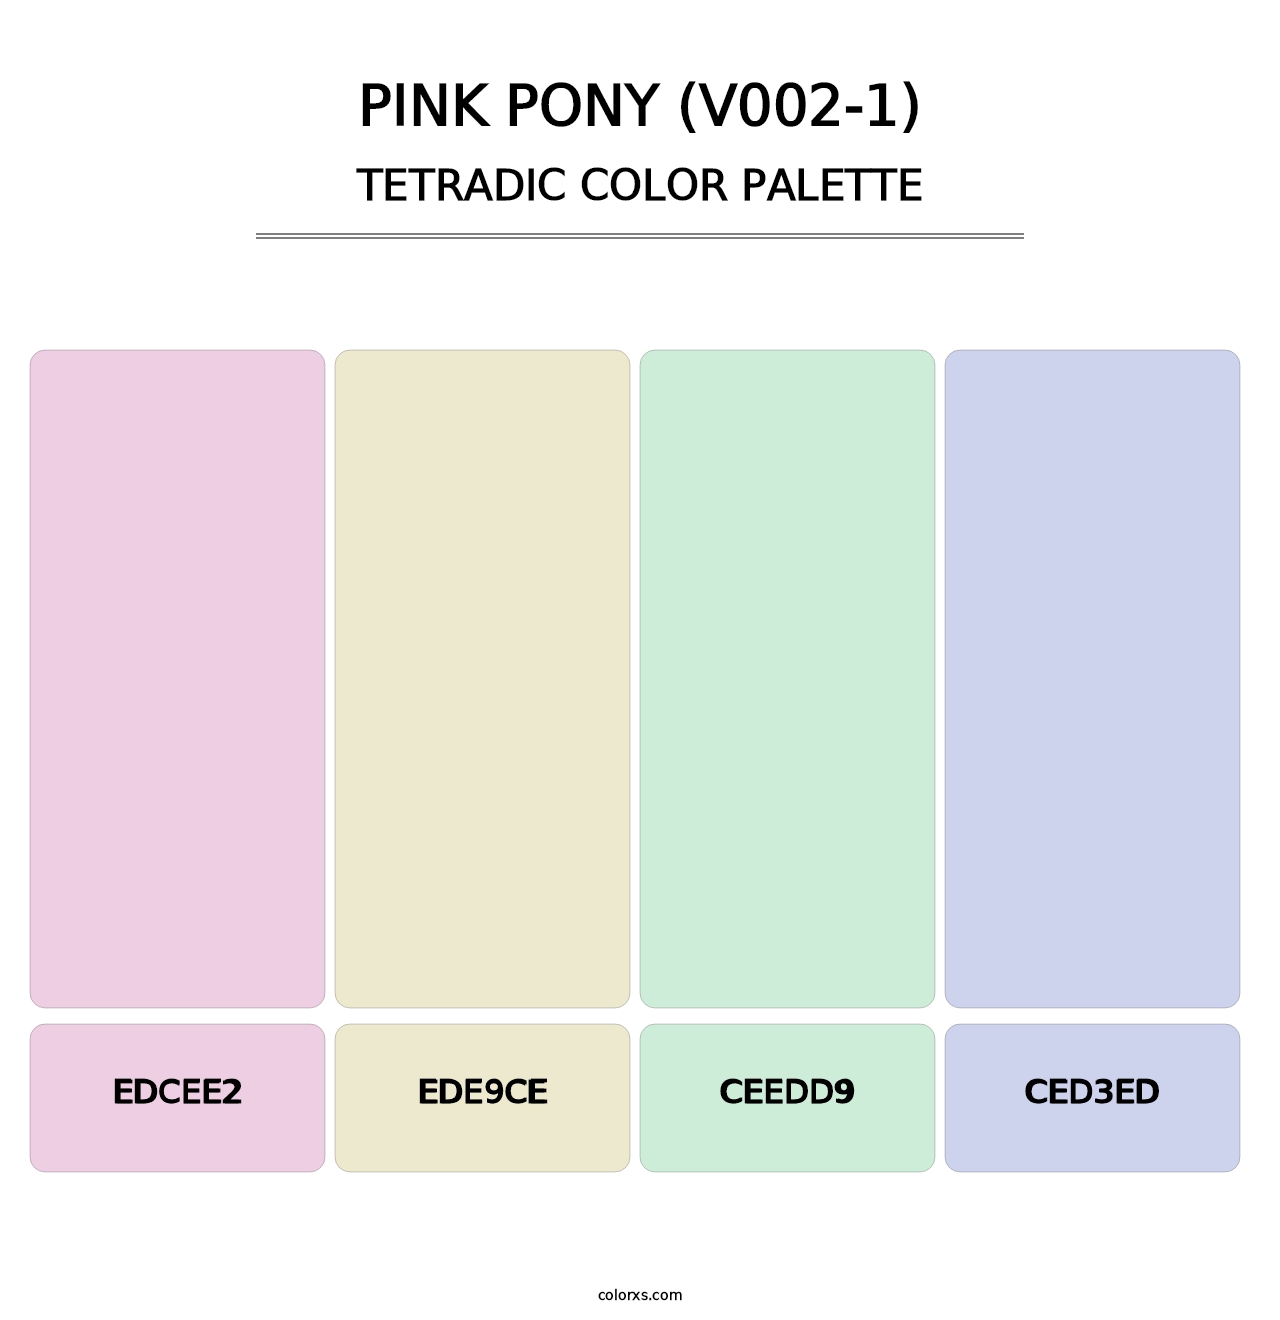 Pink Pony (V002-1) - Tetradic Color Palette